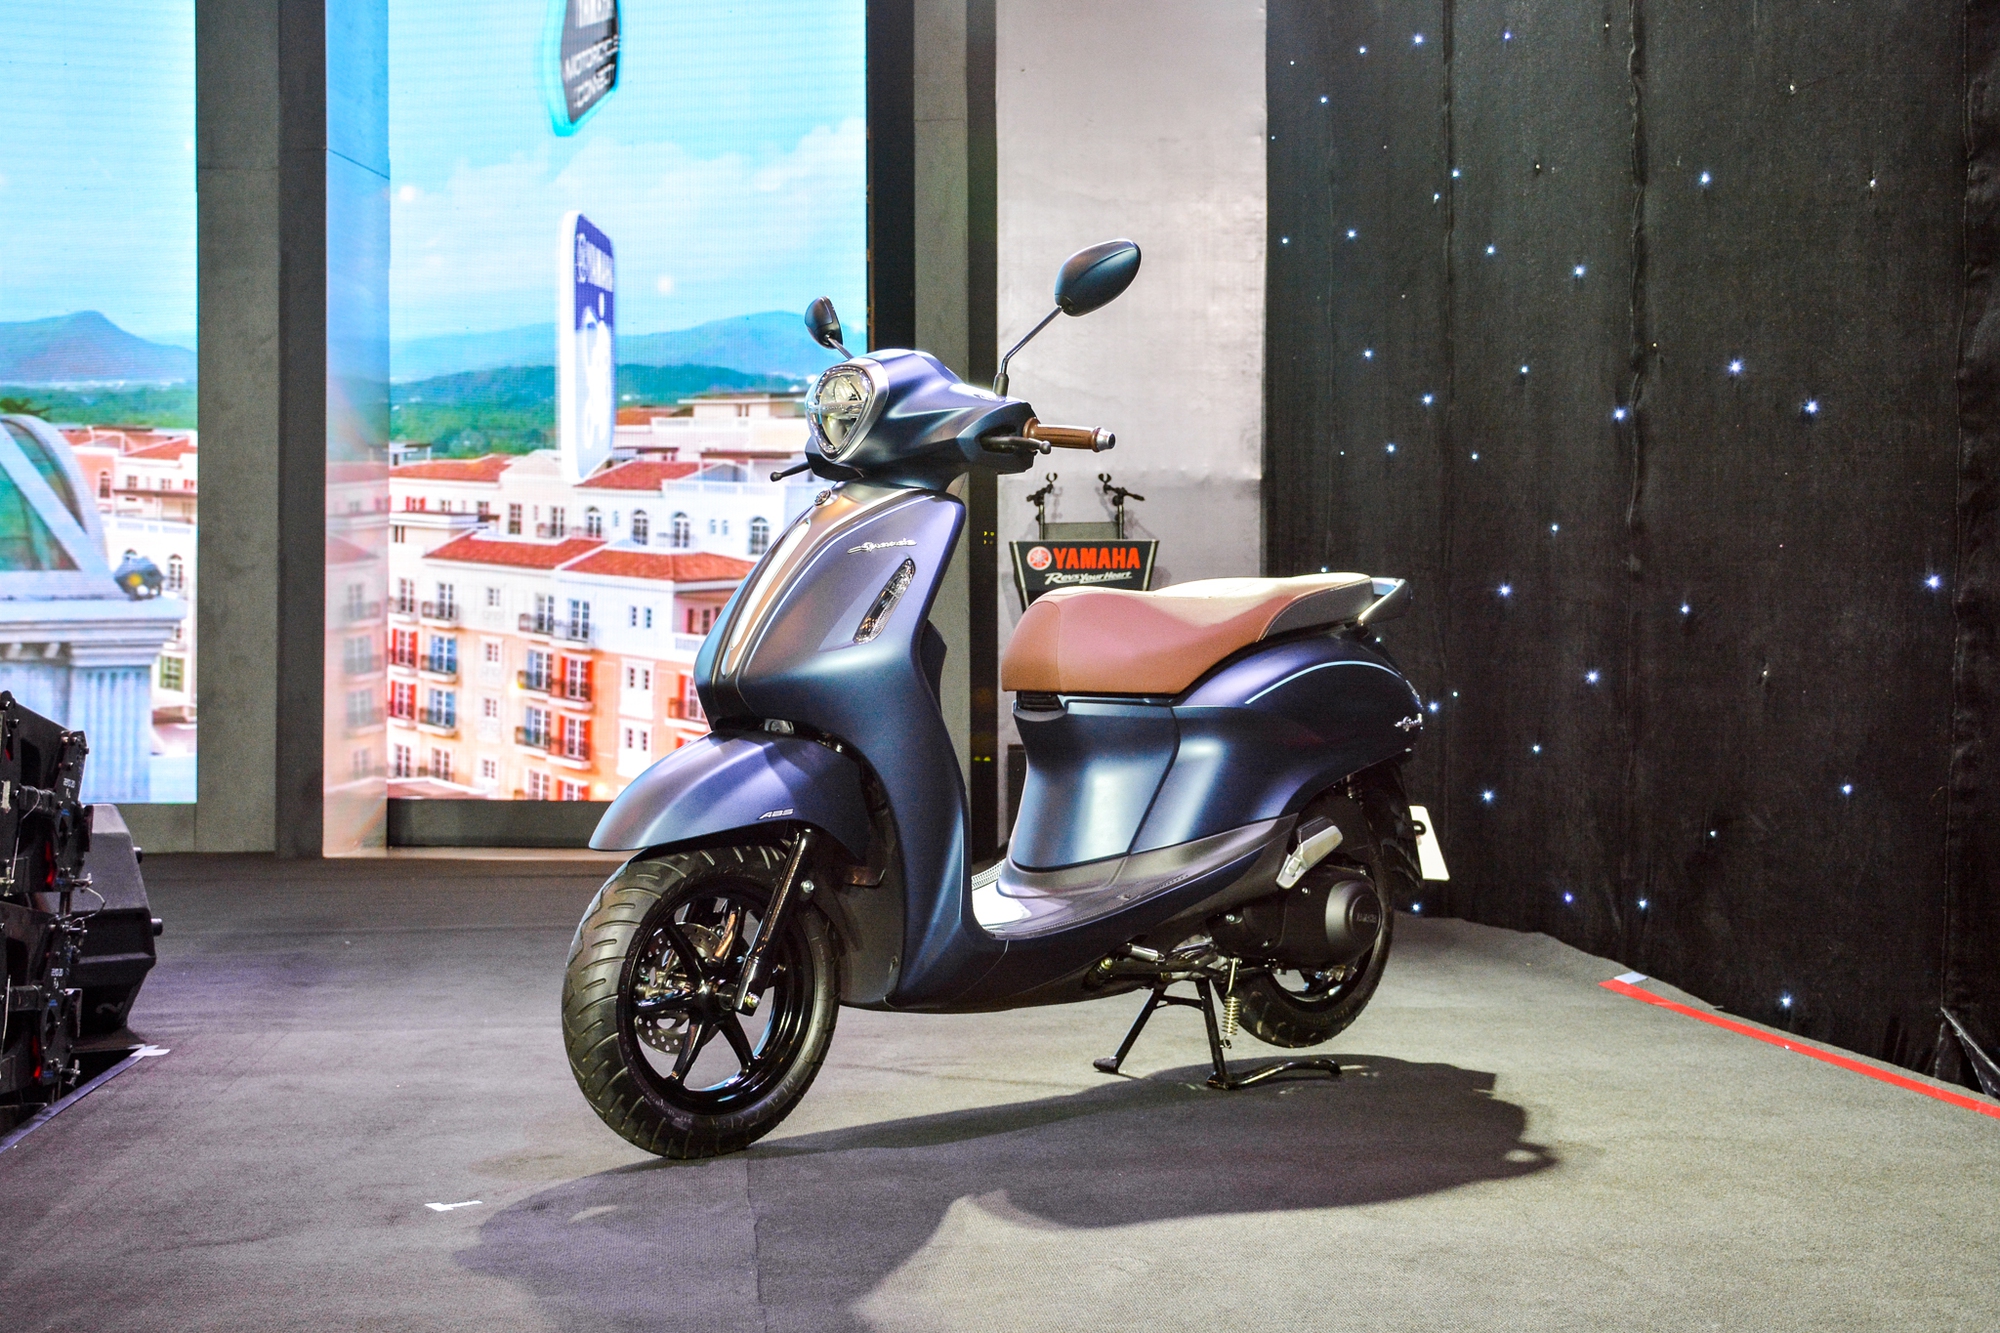 Chi tiết Yamaha Grande 2022 vừa ra mắt VN: Giá từ 45,9 triệu đồng, thiết kế mới, đầy bình đi được gần 241 km - Ảnh 20.